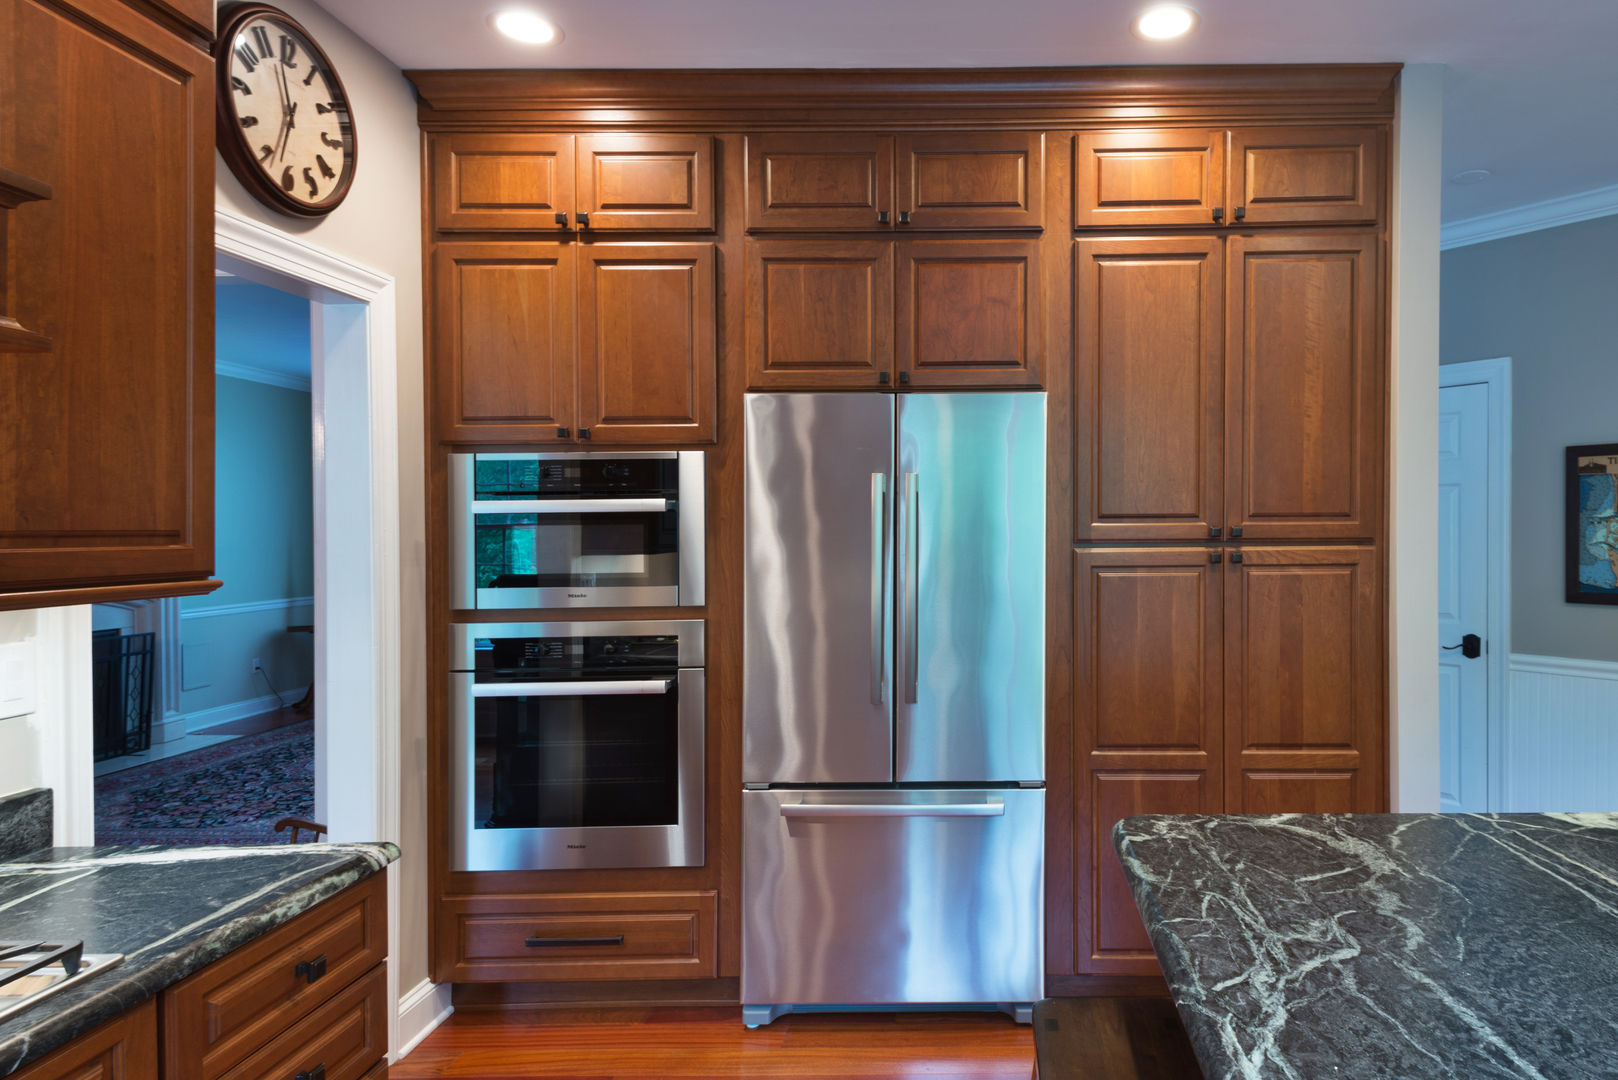 Bishop Medium Cherry Raised Panel Kitchen Main Line Kitchen Design Kitchen wall ovens,french door,refrigerator